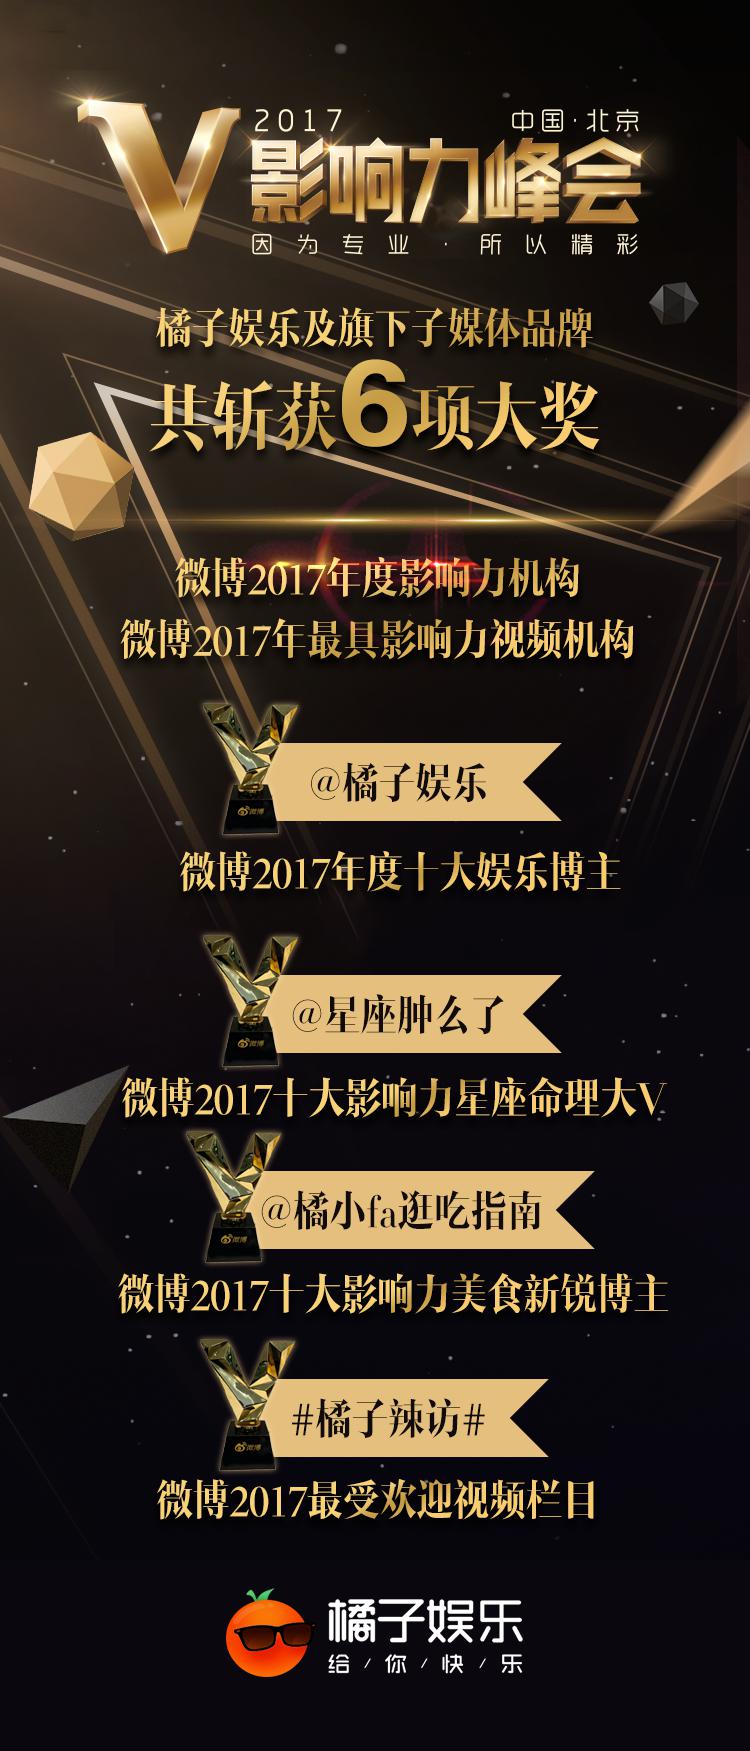 橘子娱乐获评新浪微博2017年度十大娱乐博主 共斩获6项大奖